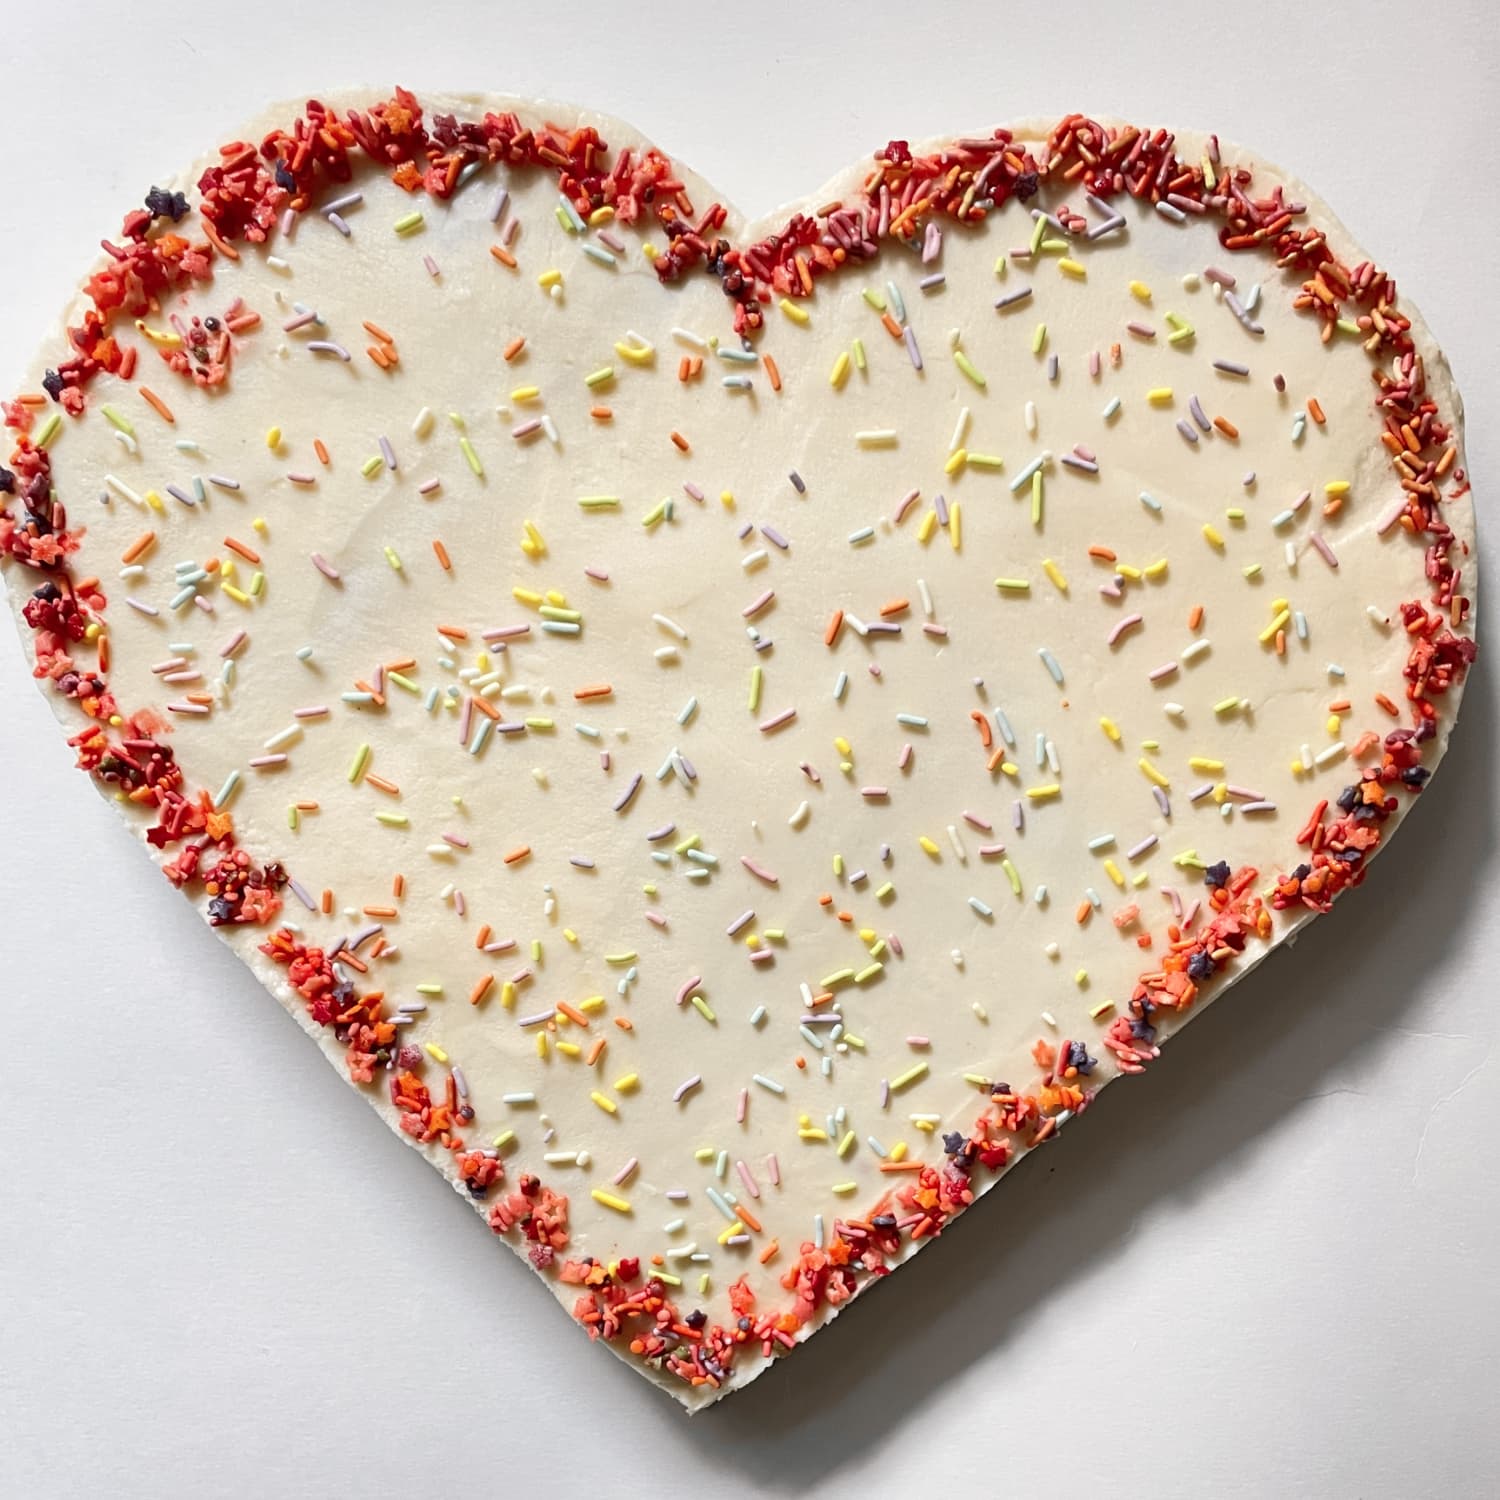 Heart-Shaped Cake